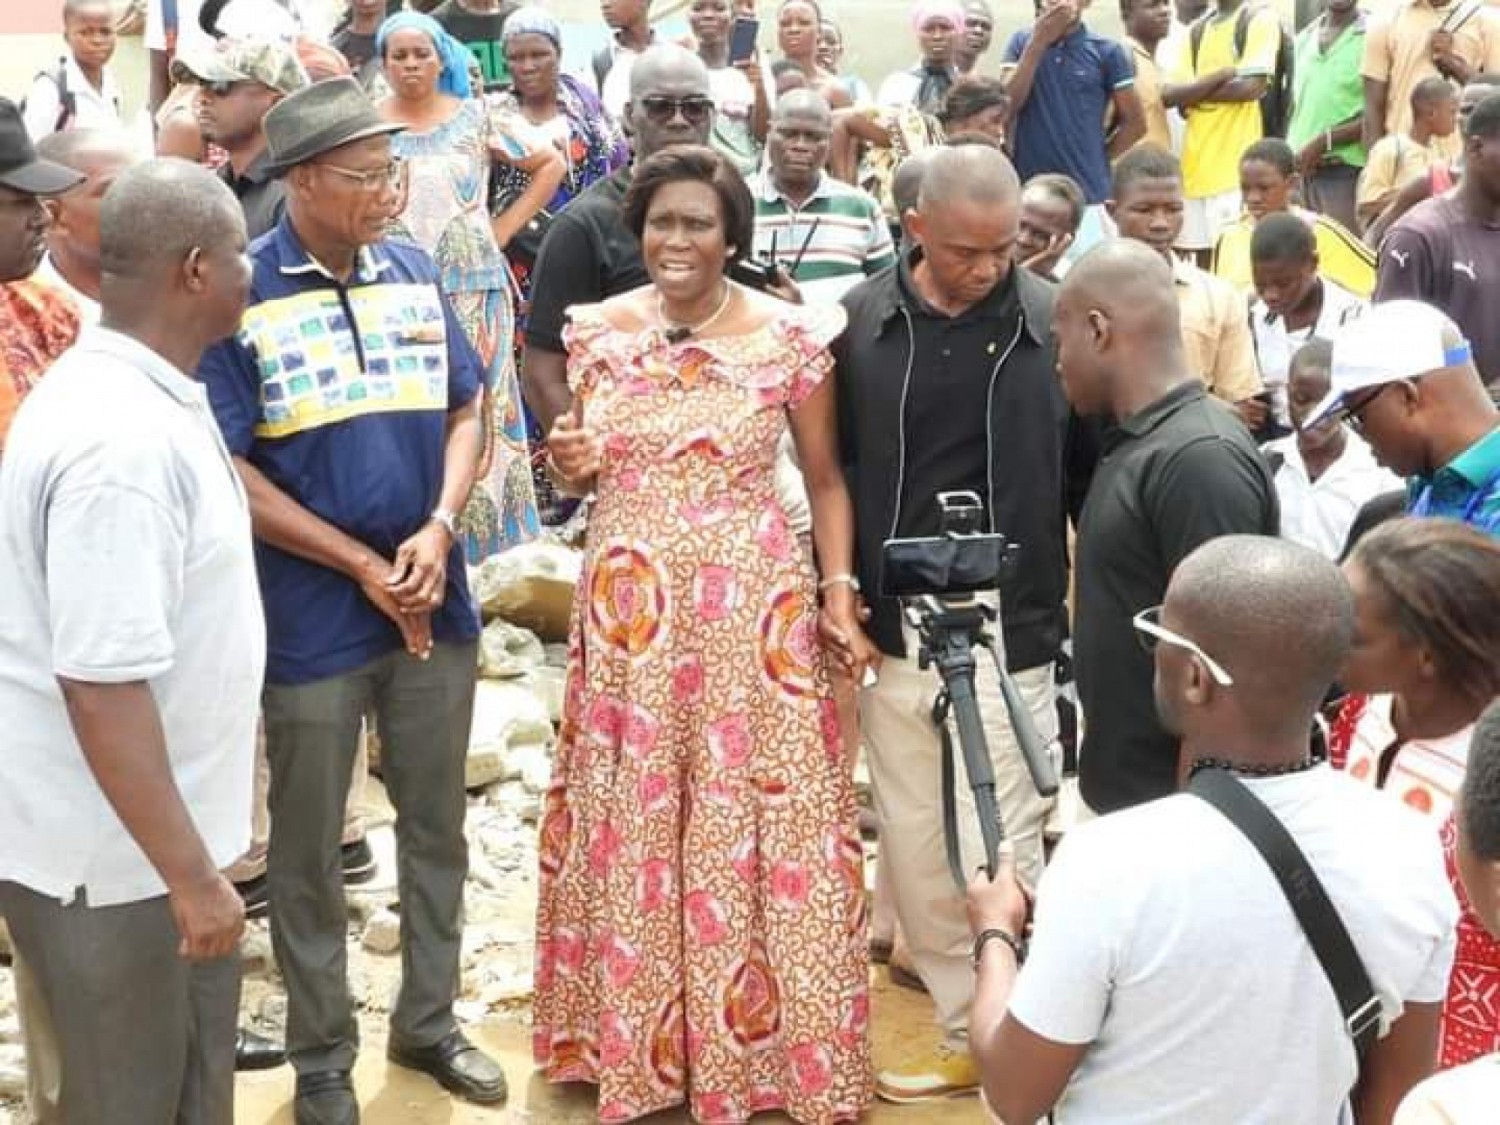 Côte d'Ivoire : Yopougon, Simone Gbagbo sur les ruines des démonstrations prévoit de prendre des mesures